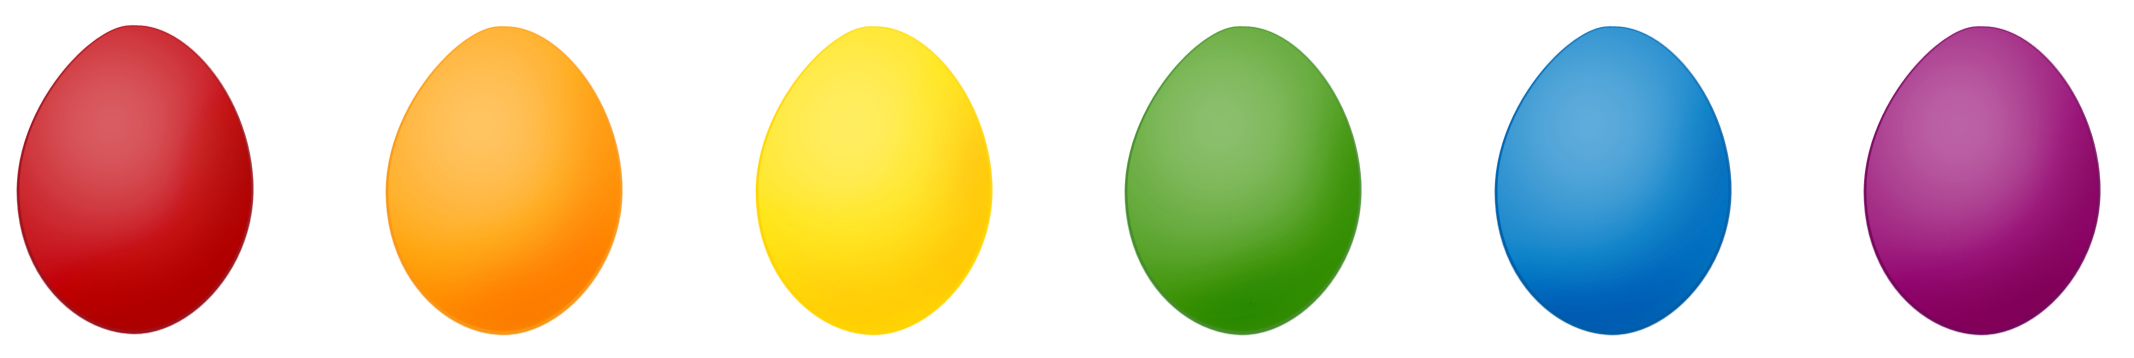 egg clipart border